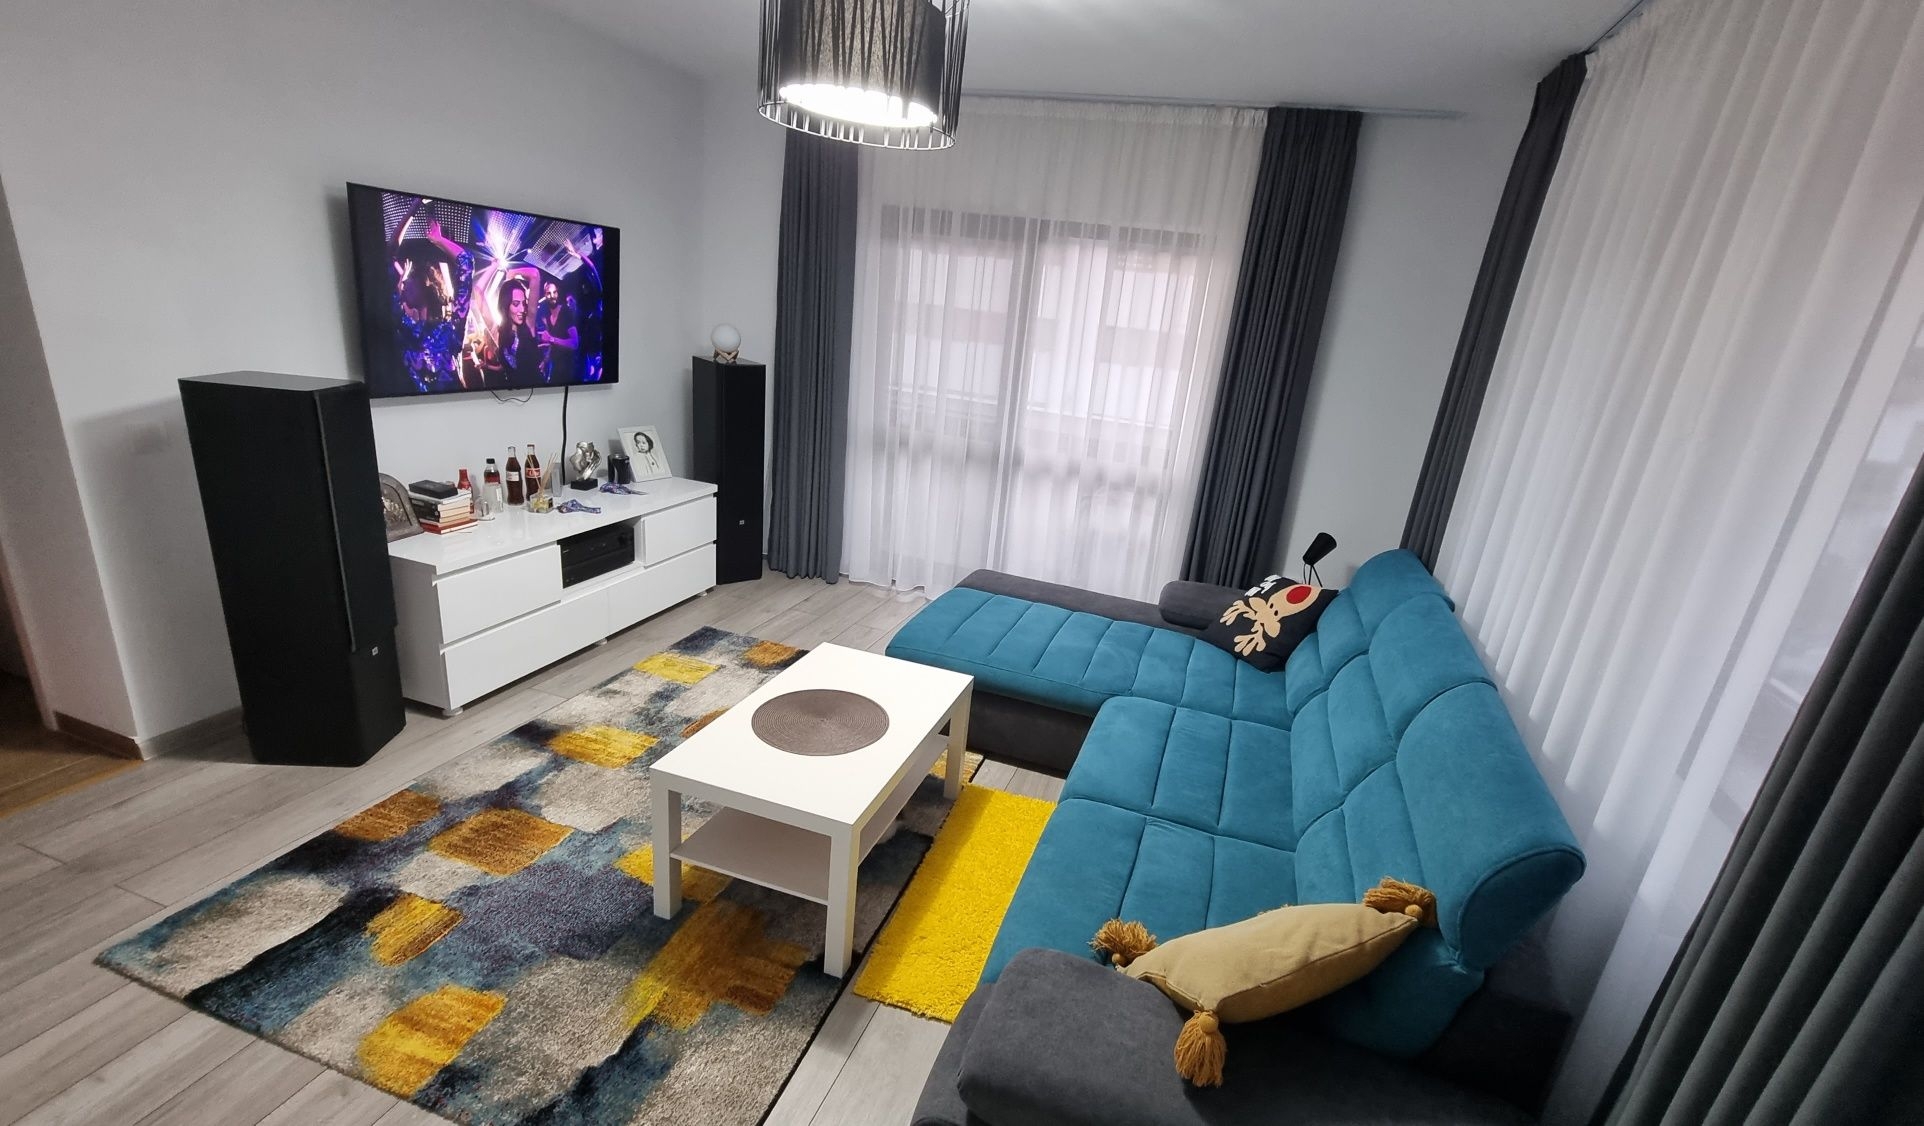 Apartament 3 camere decomandate prin calda linie cromatica, utilat si mobilat, Sanpetru, Brasov